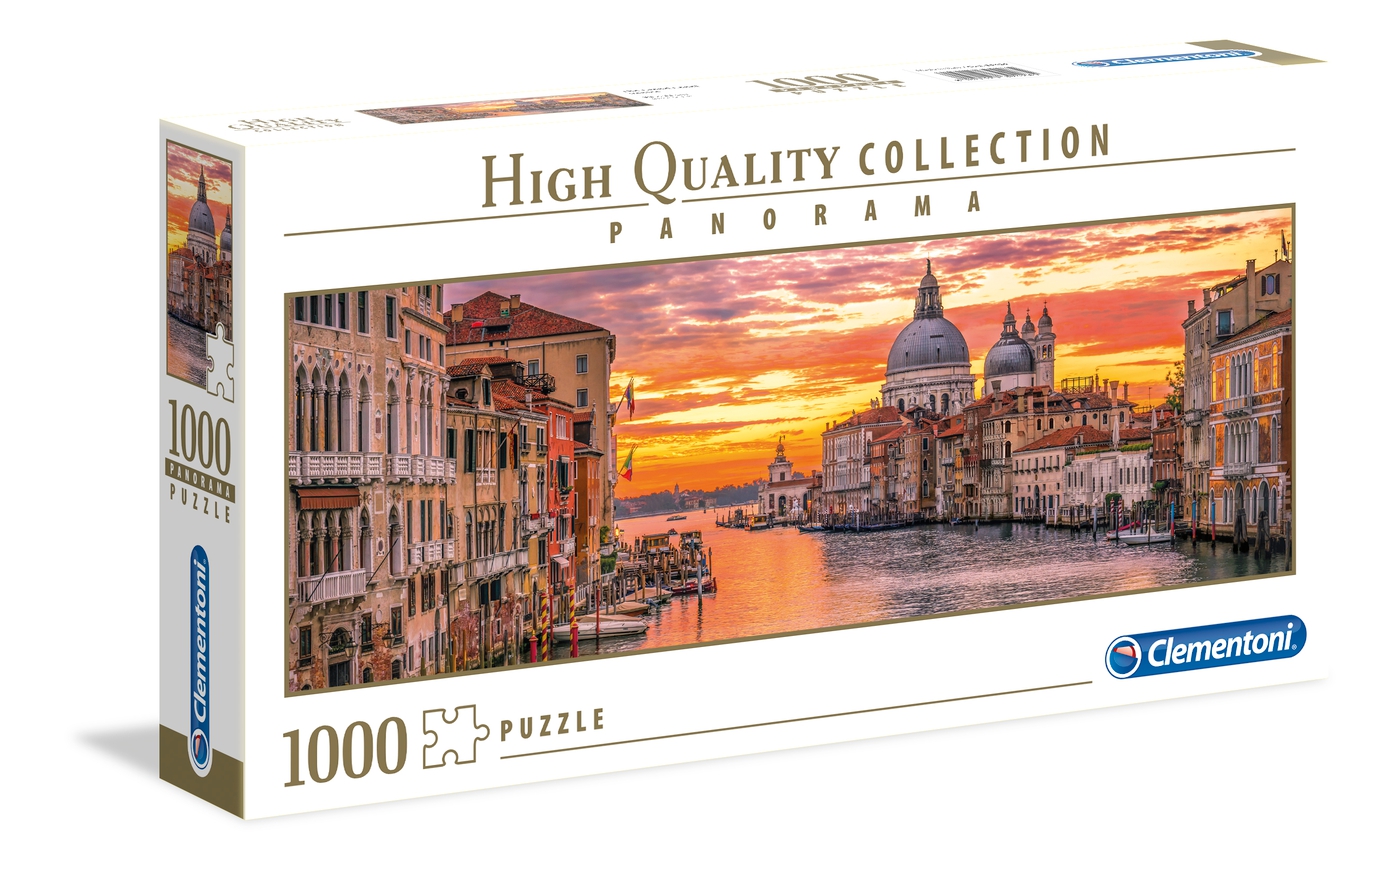 Puzzle 1000 piezas -Panorama: Canal de Venecia- Clementoni